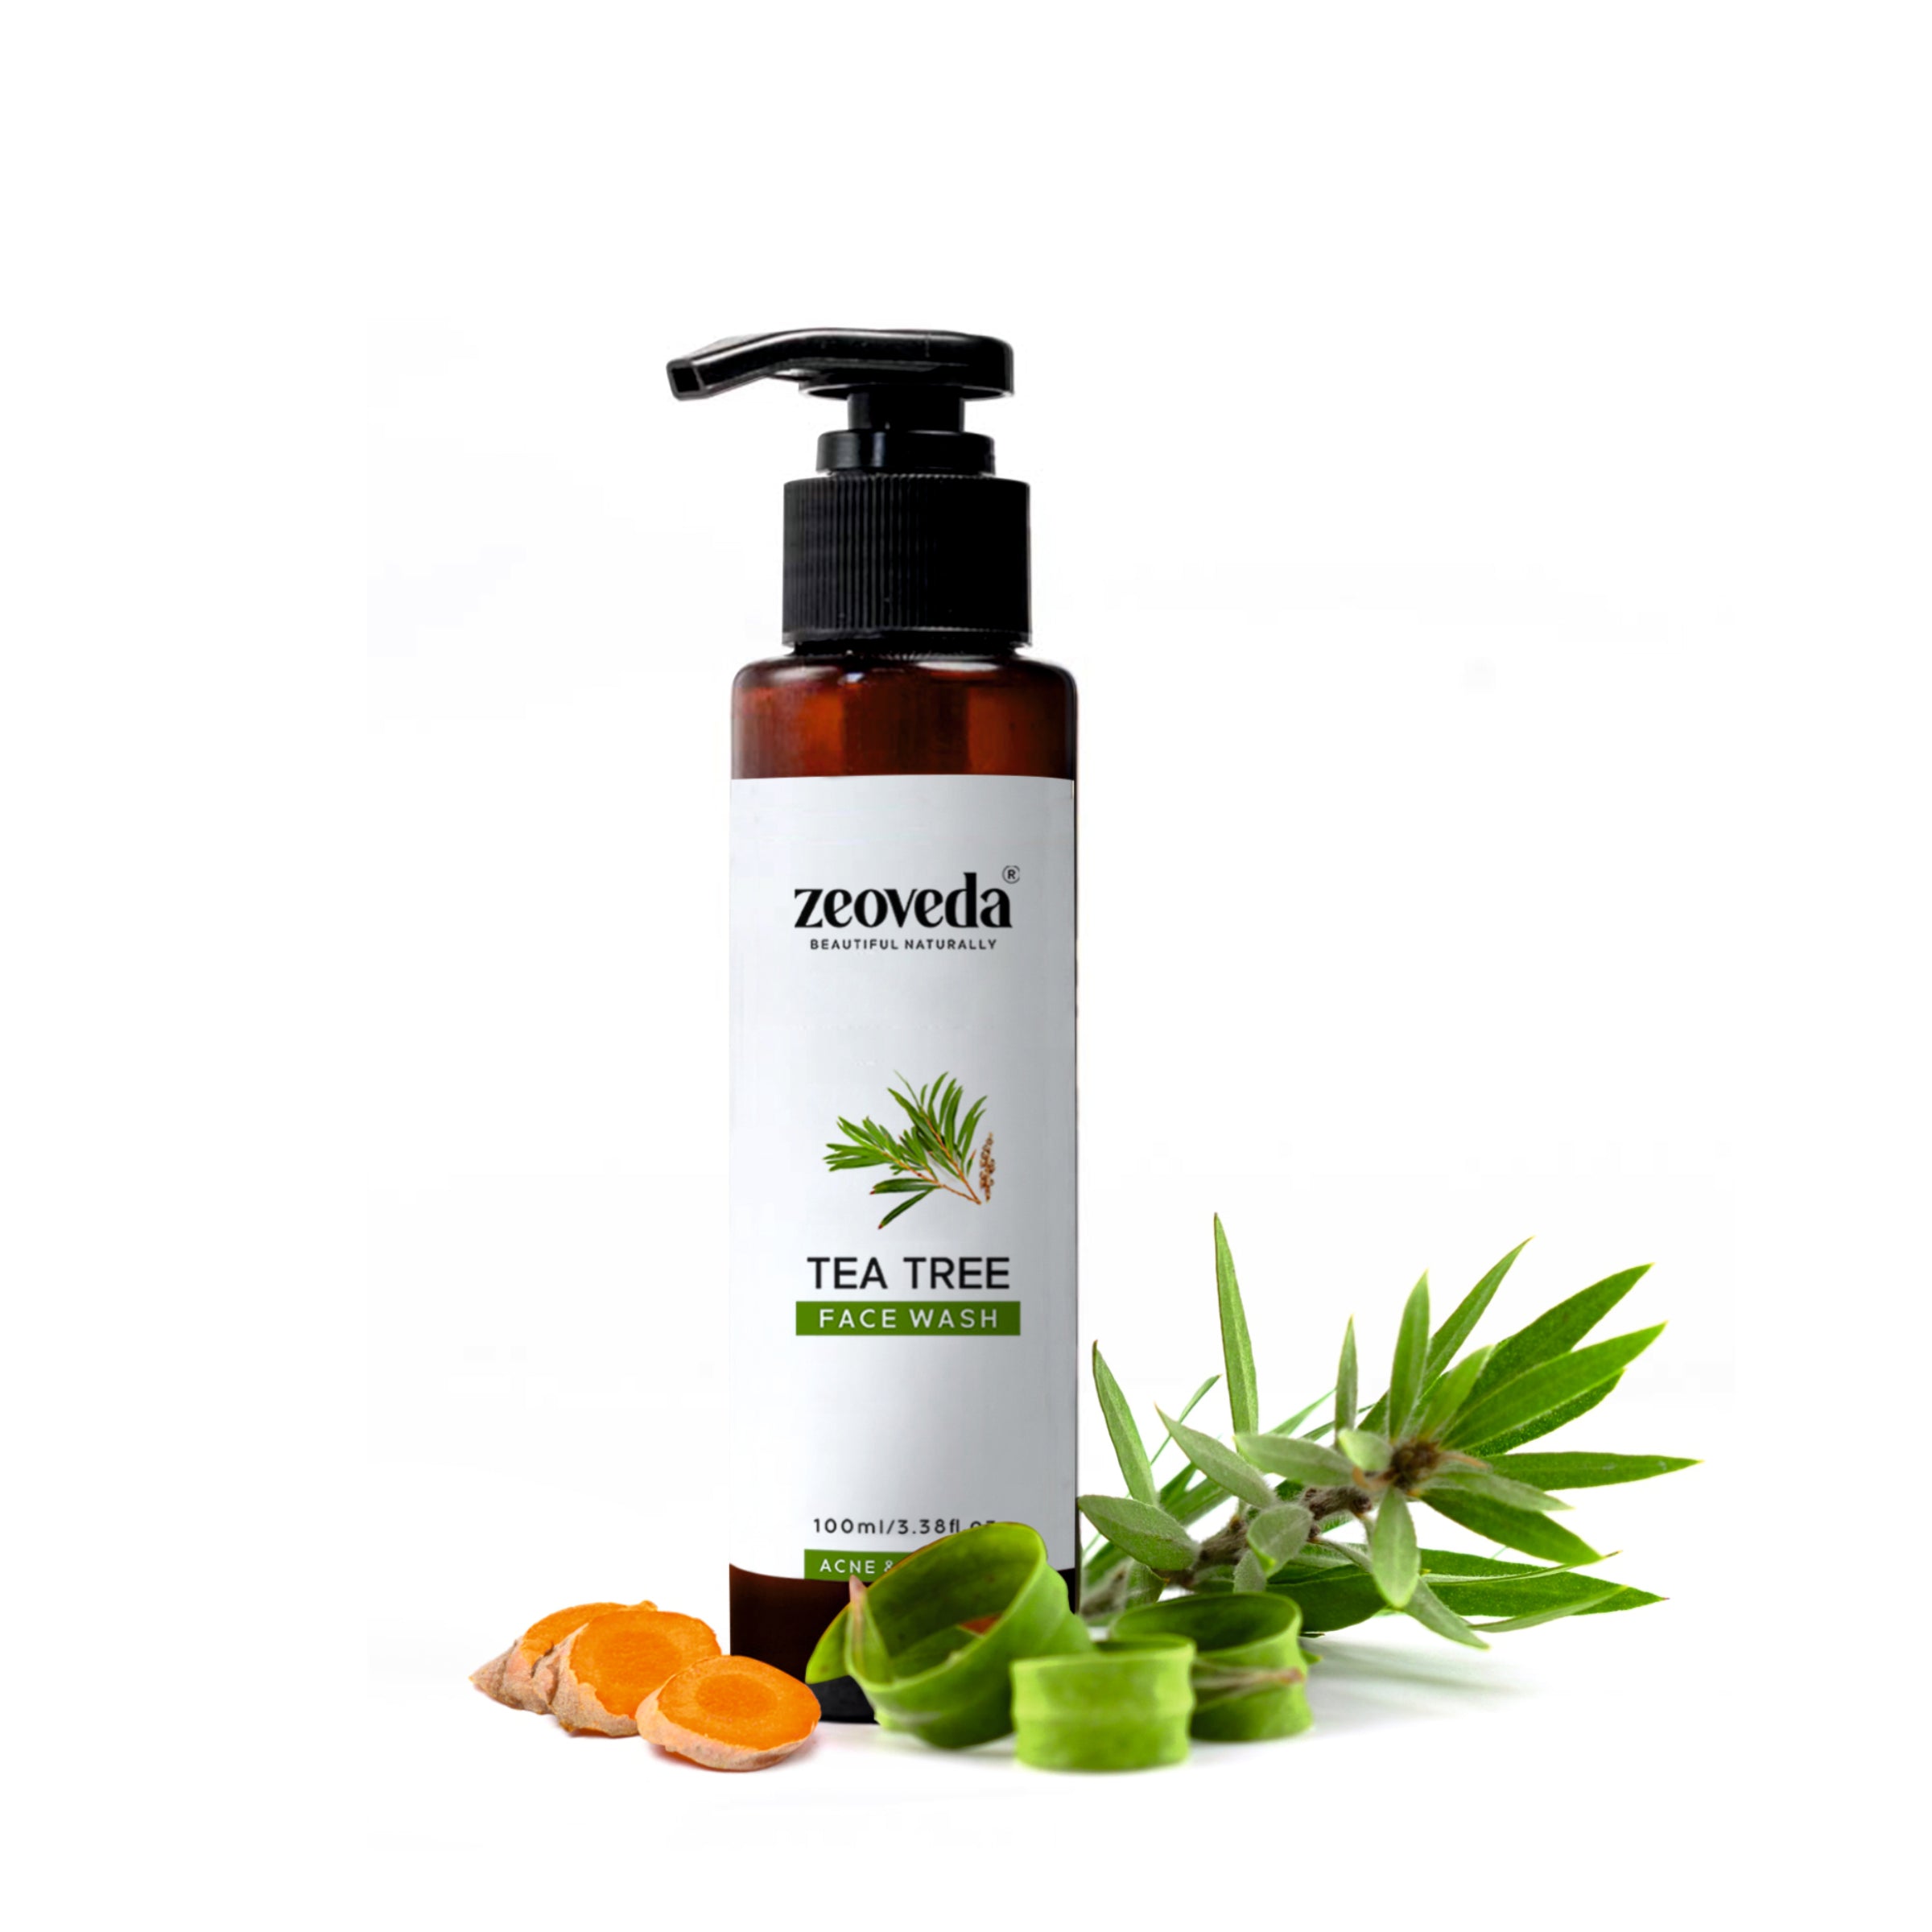 Lavender Sugar Scrub(150GM) + Tea Tree Face Wash(100ML) Combo For Acne & Pigmentation